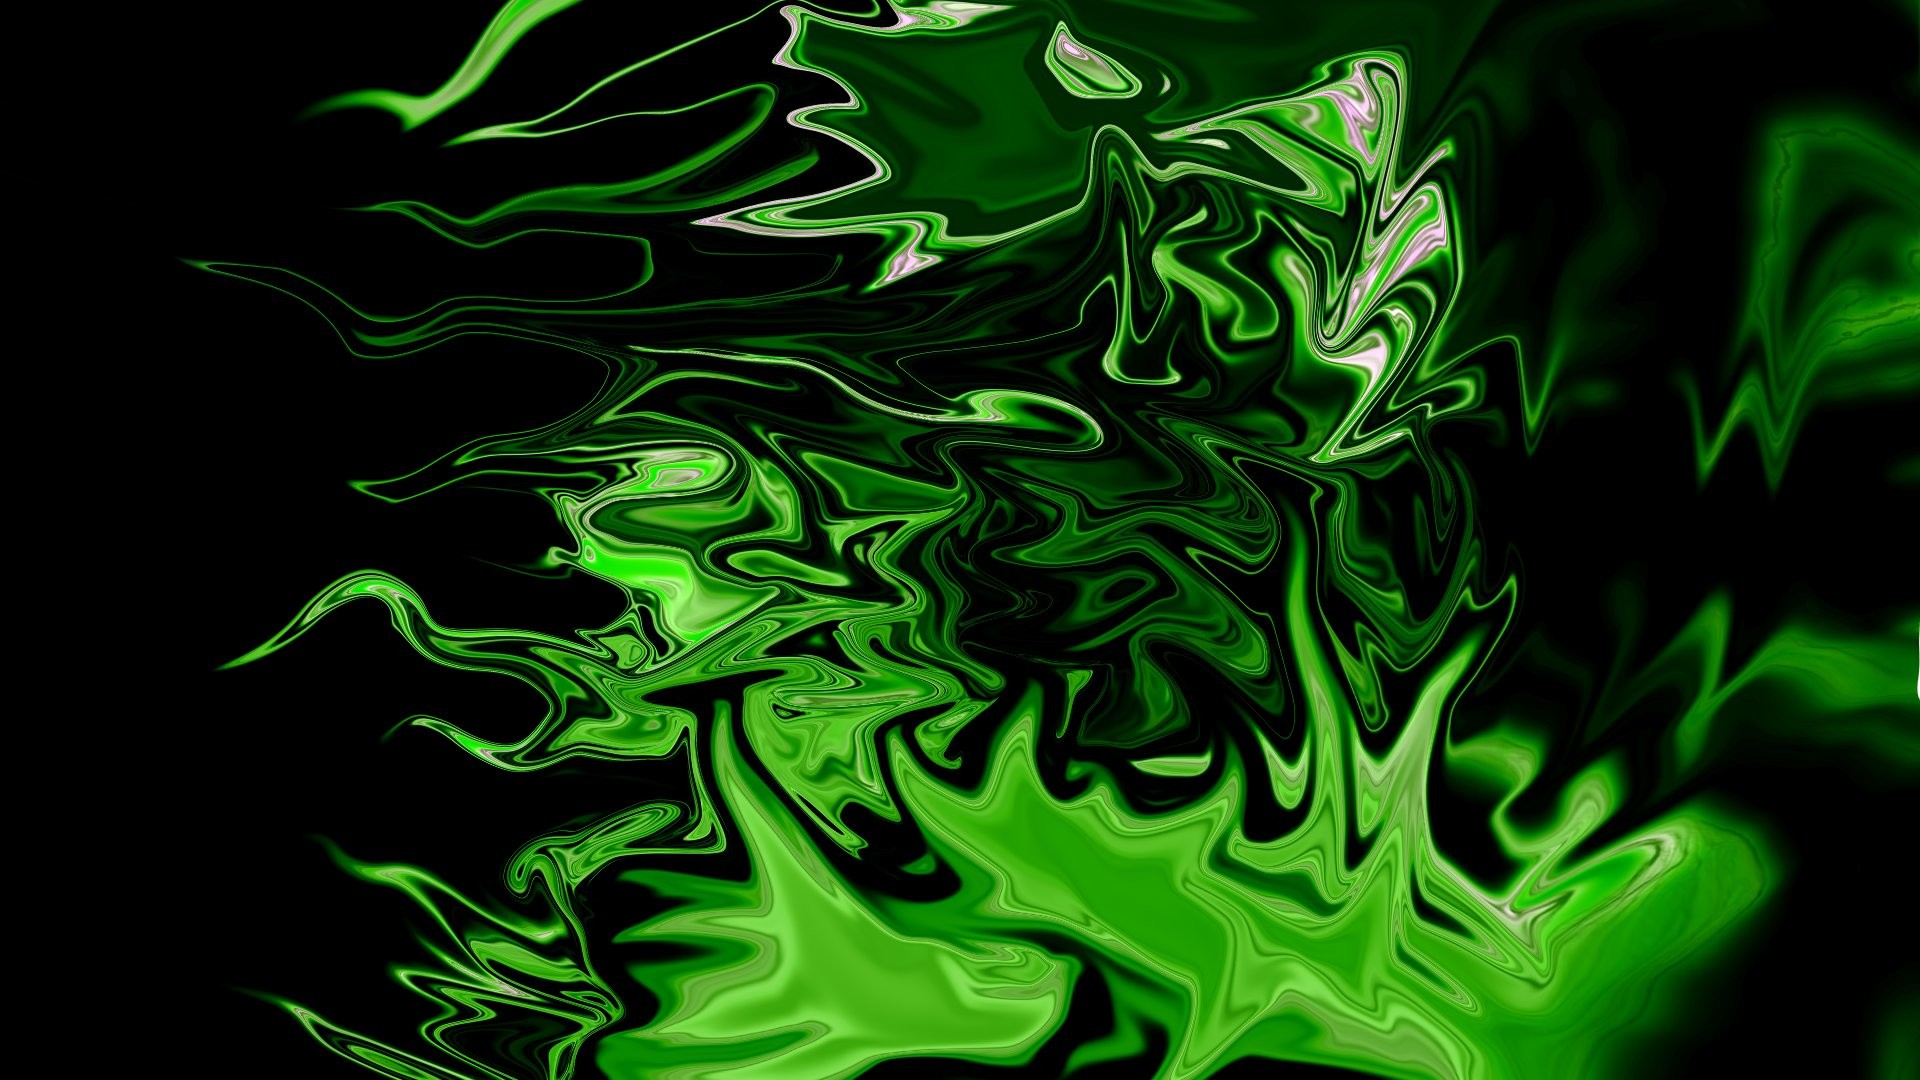 1920x1080 Free Download Green Neon Wallpapers | PixelsTalk.Net